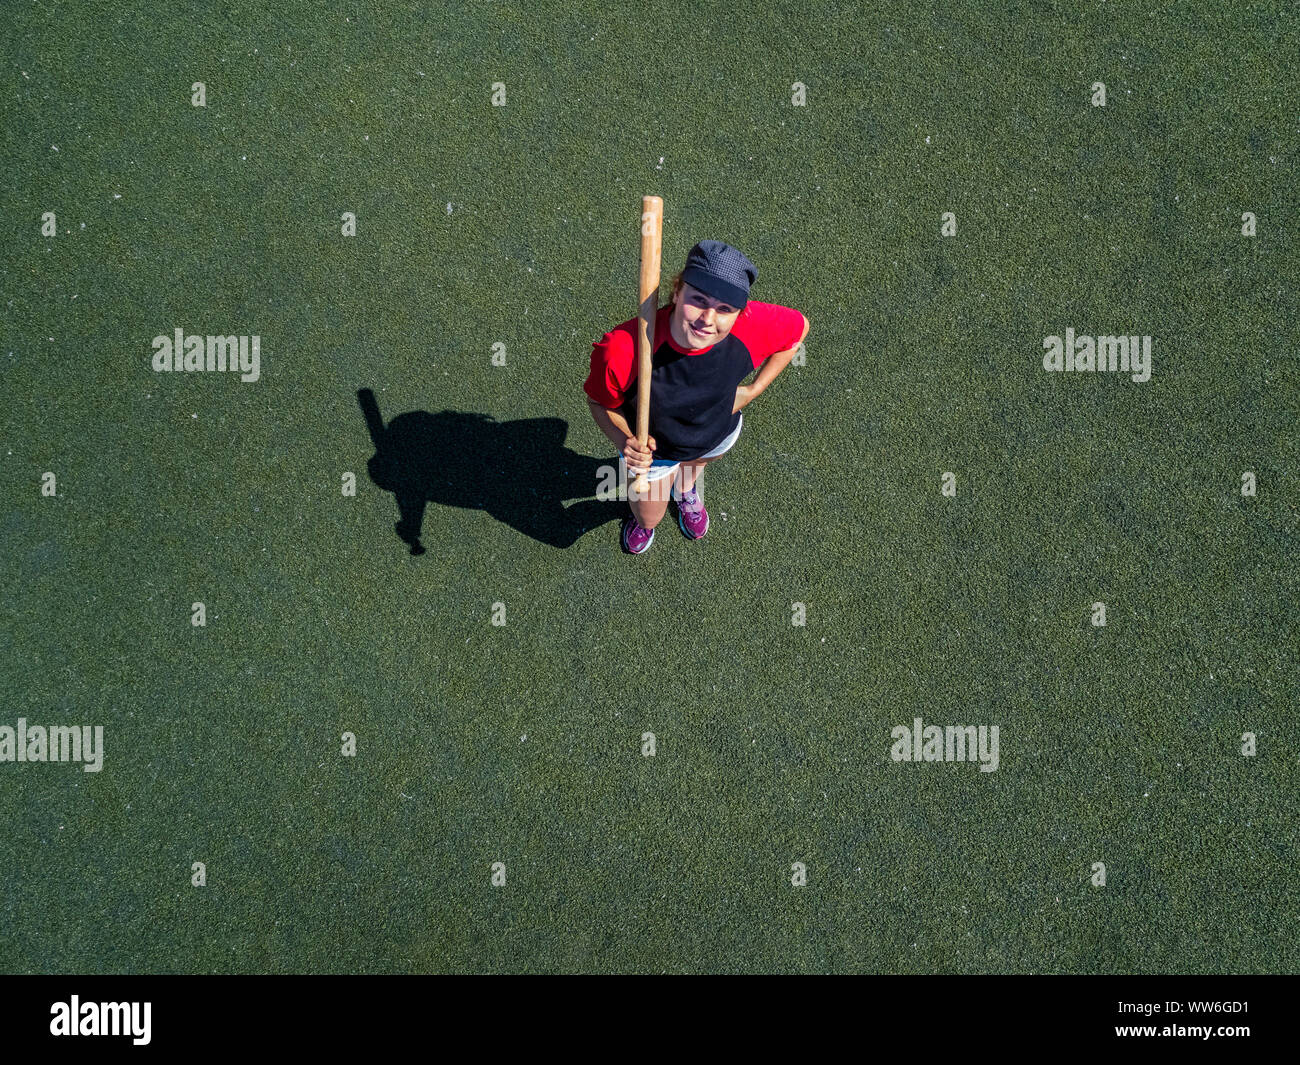 Vista aerea, adolescente, 18 anni, Riproduzione di baseball Foto Stock